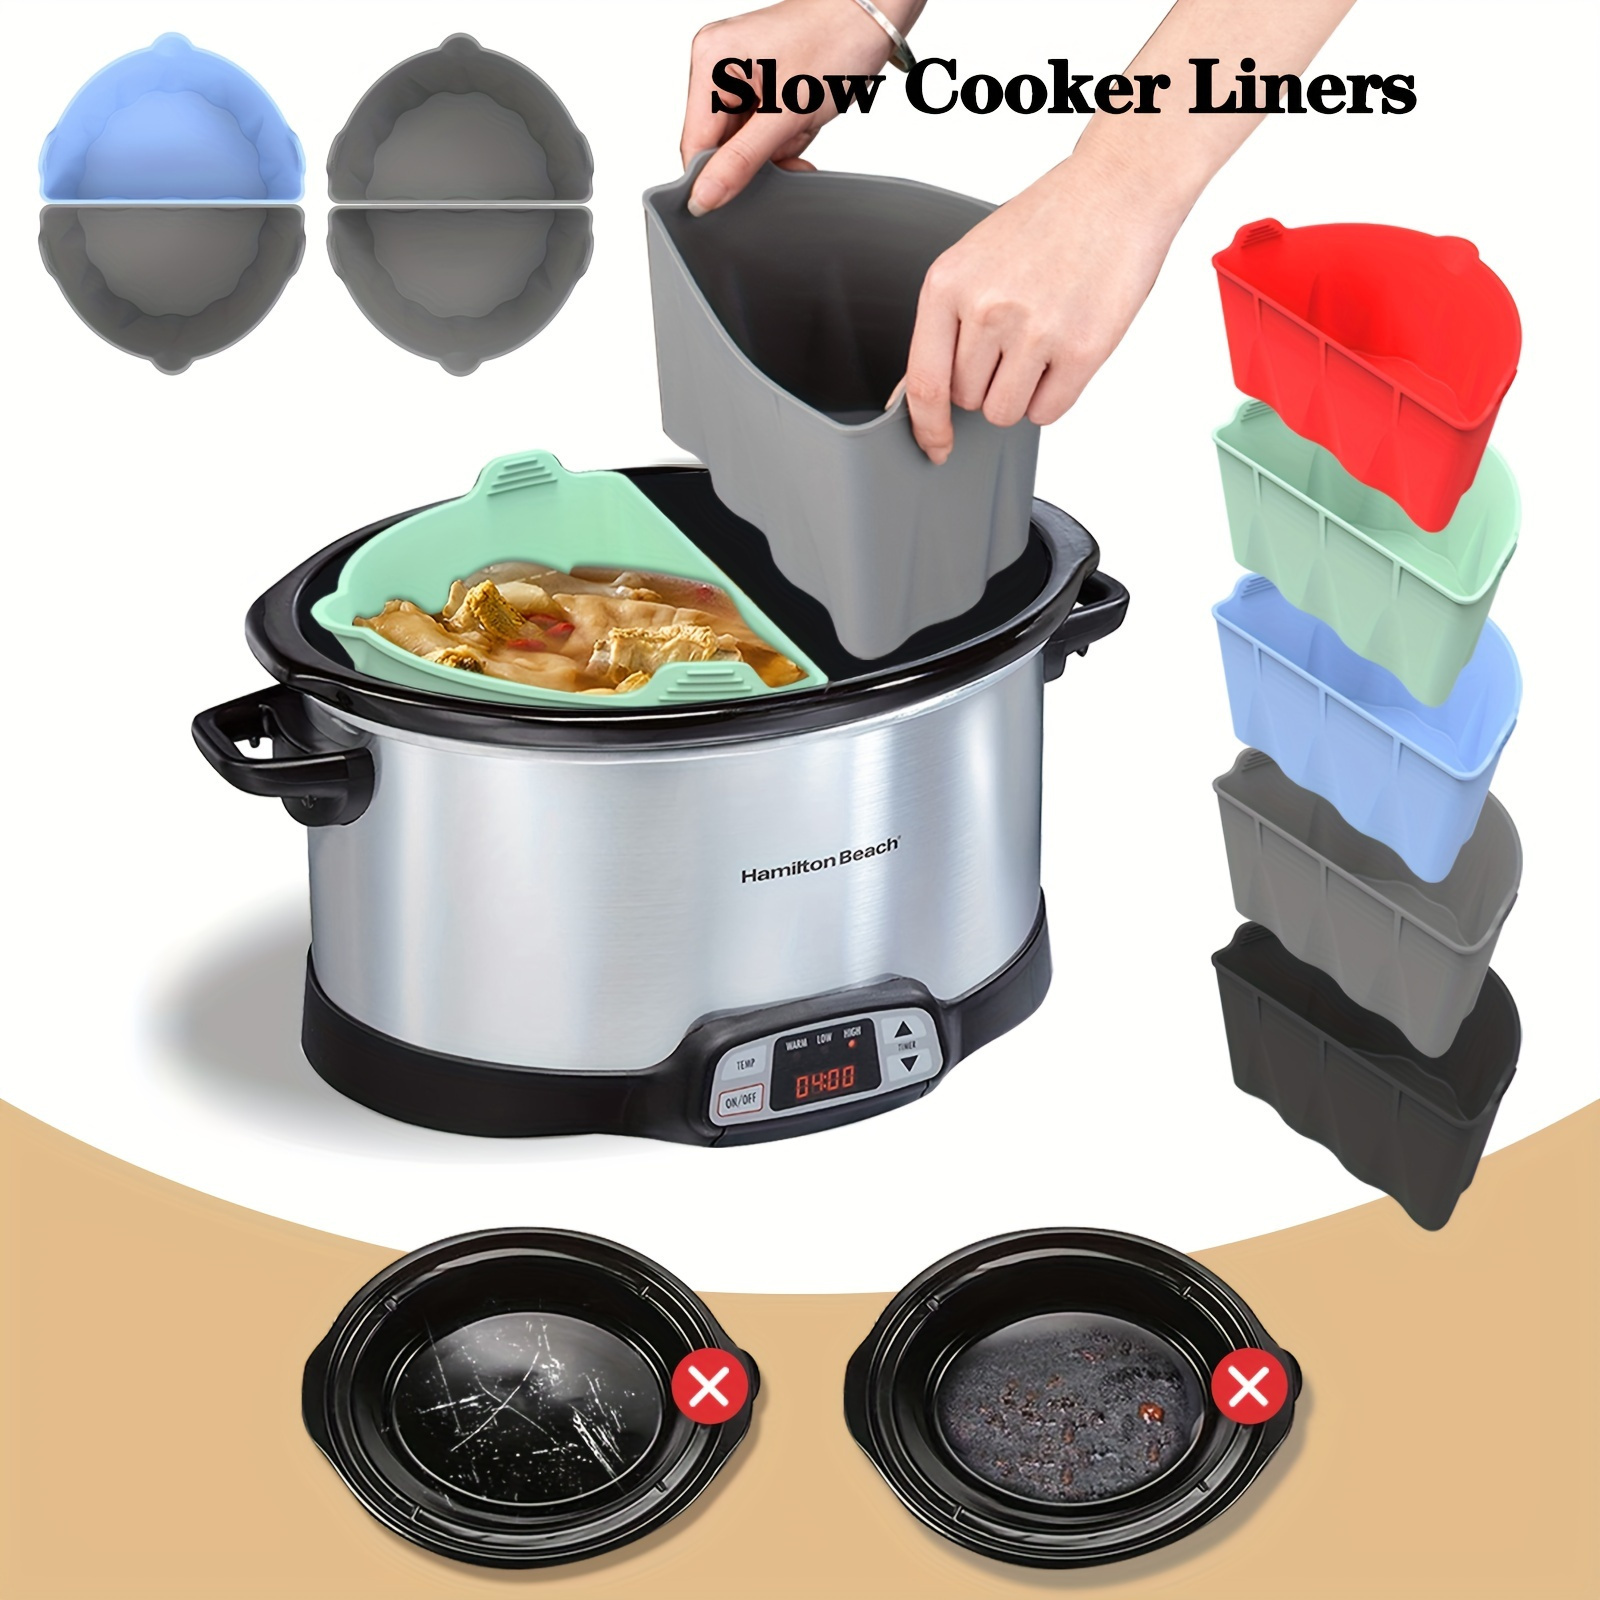 Slow Cooker Liners for Crockpot Crock Pot 6-8 QT, Reusable Silicone Slow  Cooker Divider Liner large Size for 6-8 Quart Oval Slow Cooker,Crock Pot